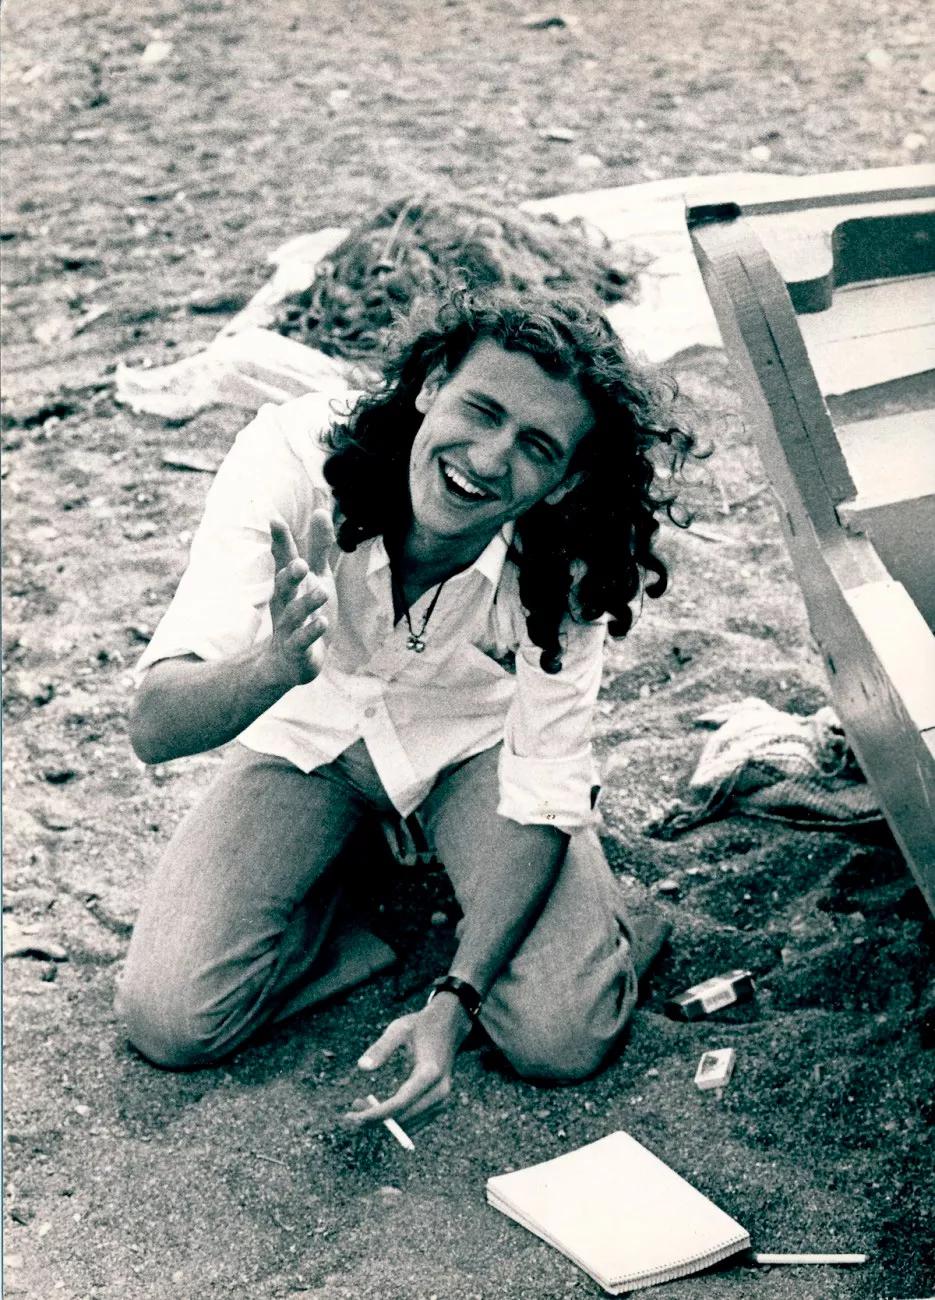 Mayo de 1977. Colocón en alguna playa africana. Rafa hizo la foto.